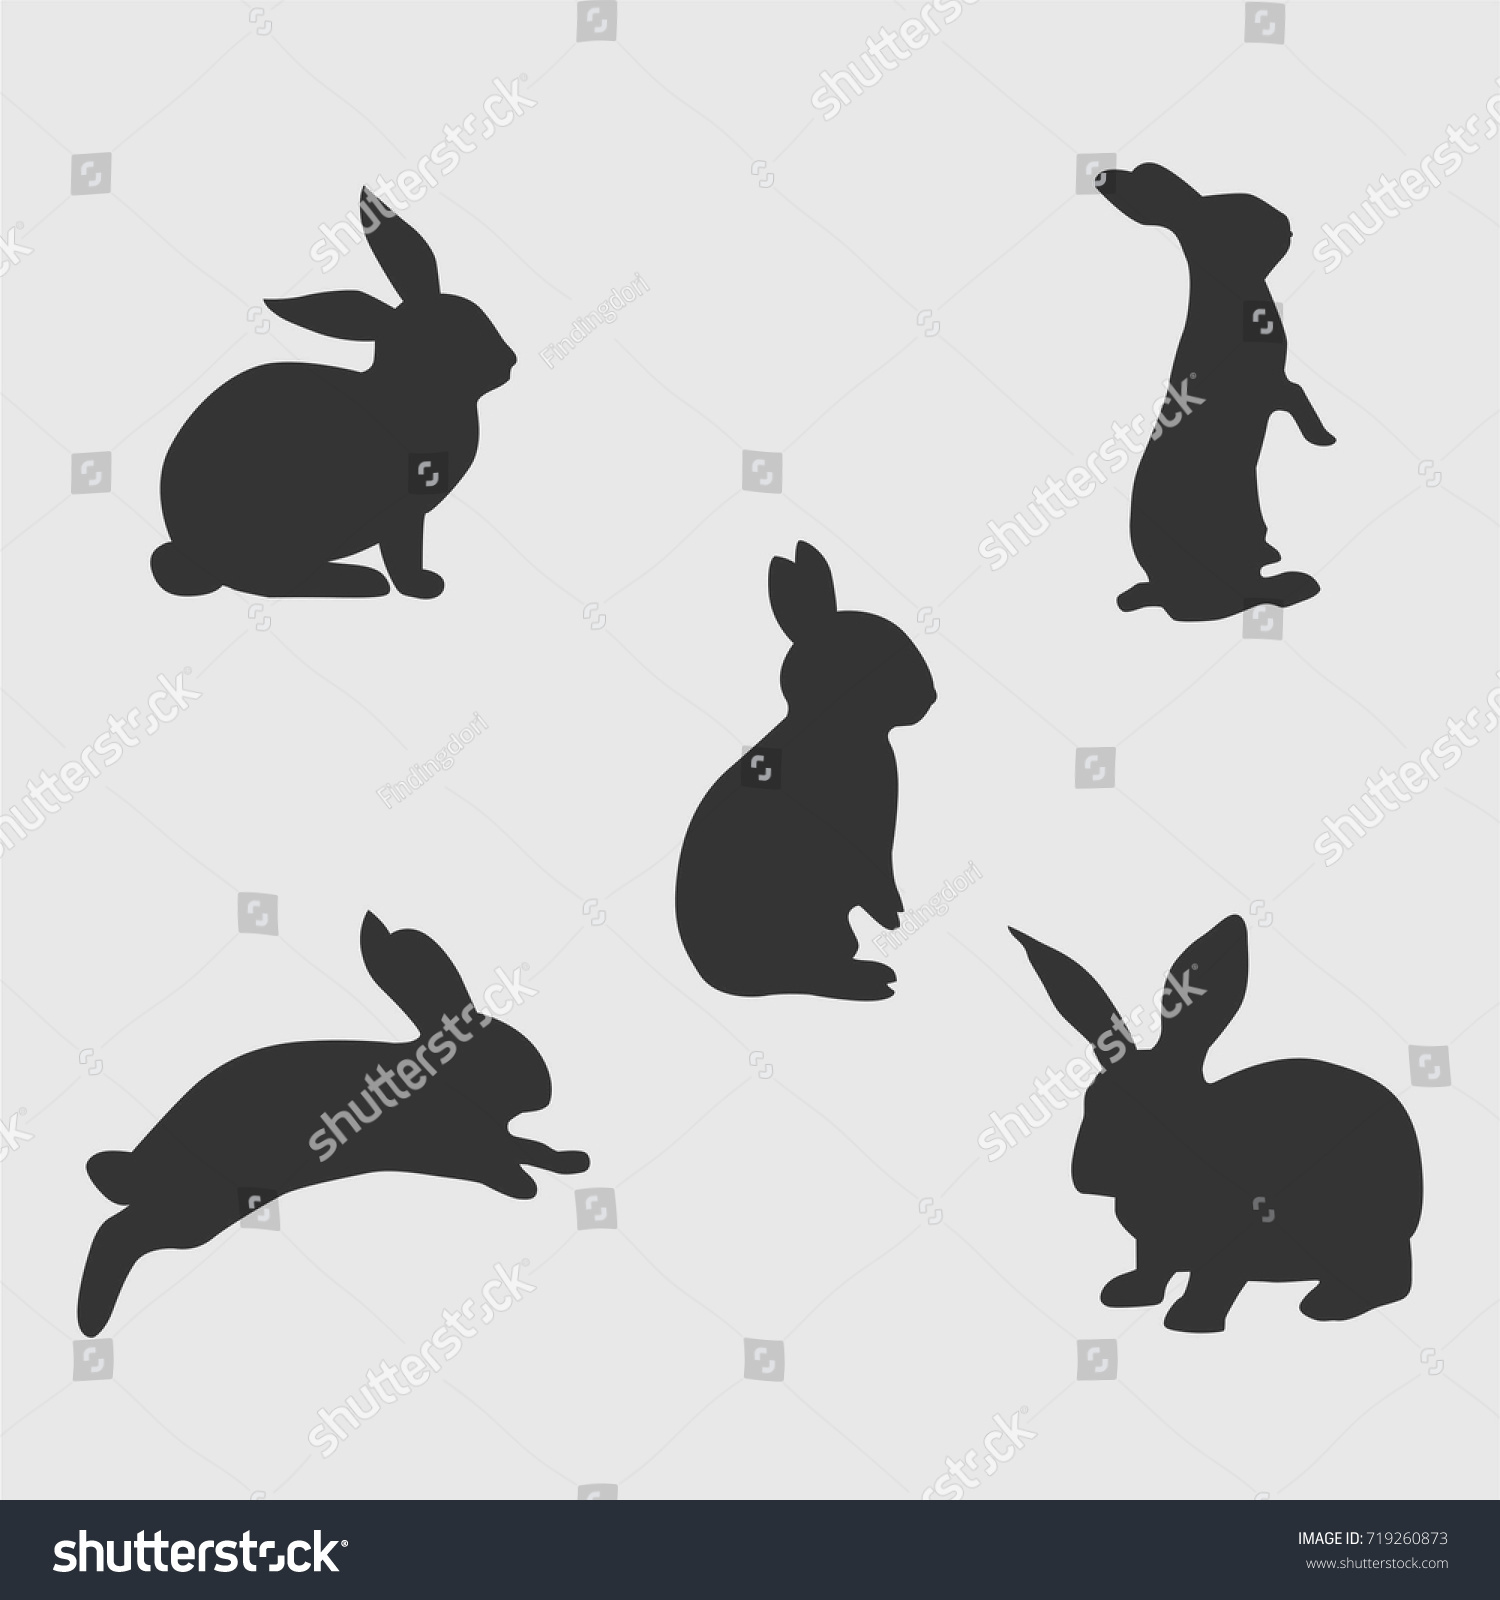 ウサギのシルエット のベクター画像素材 ロイヤリティフリー